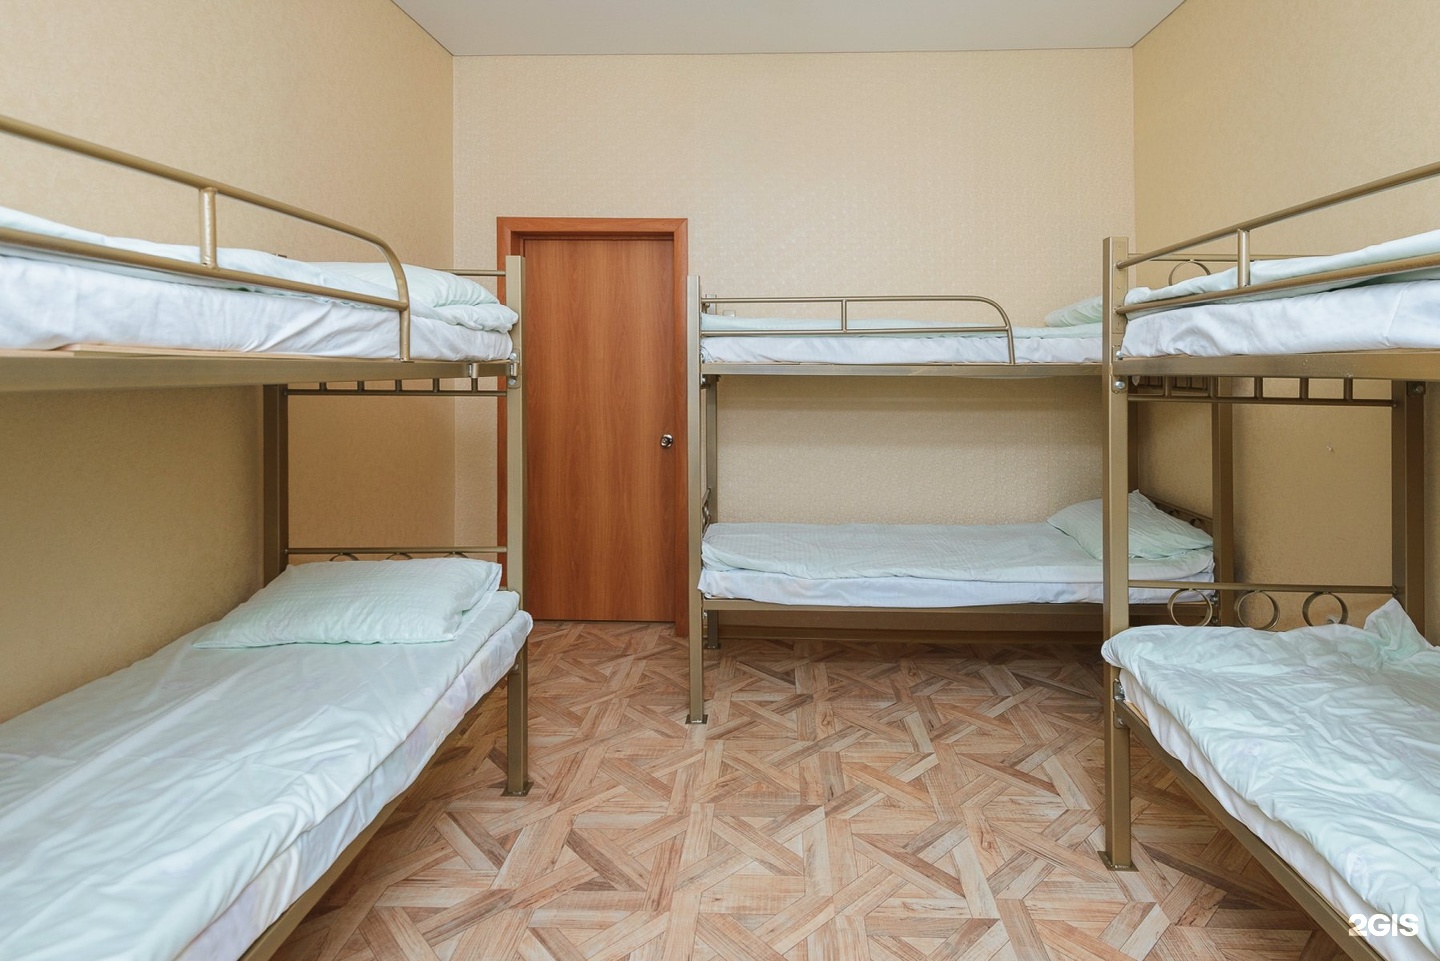 Общежития москве недорого купить